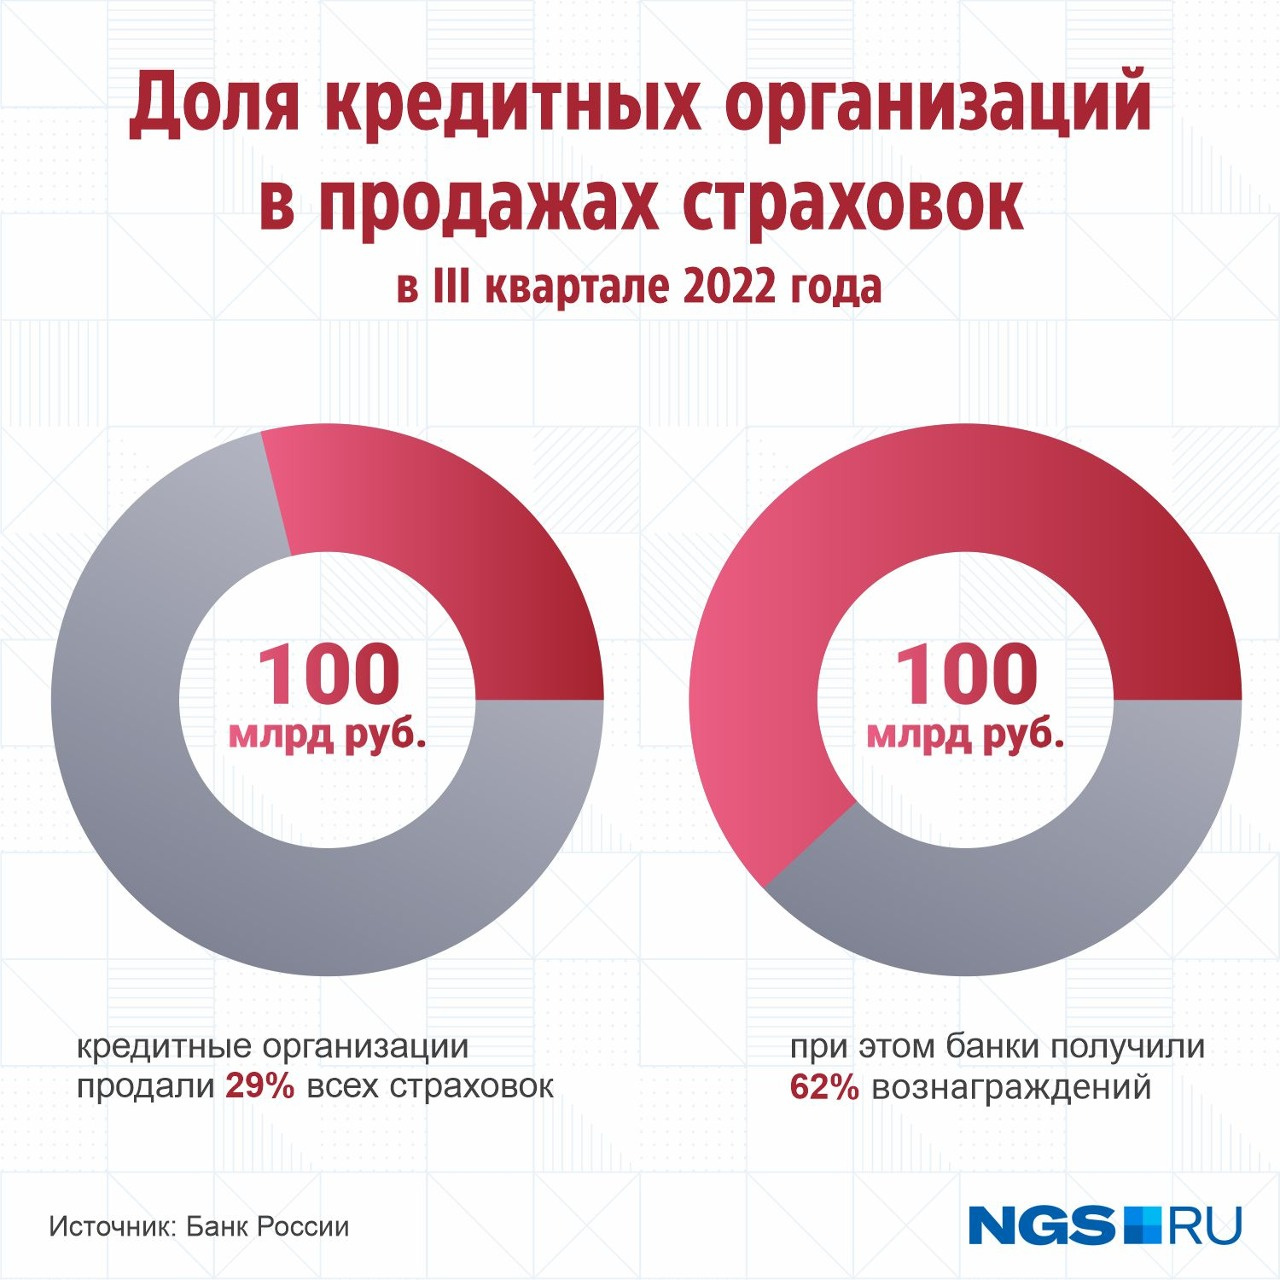 Из последней актуальной статистики ЦБ России следует, что на долю банков приходится менее трети проданных страховок. При этом они получают львиную долю общей прибыли в этом сегменте рынка. Всё дело в размере комиссии